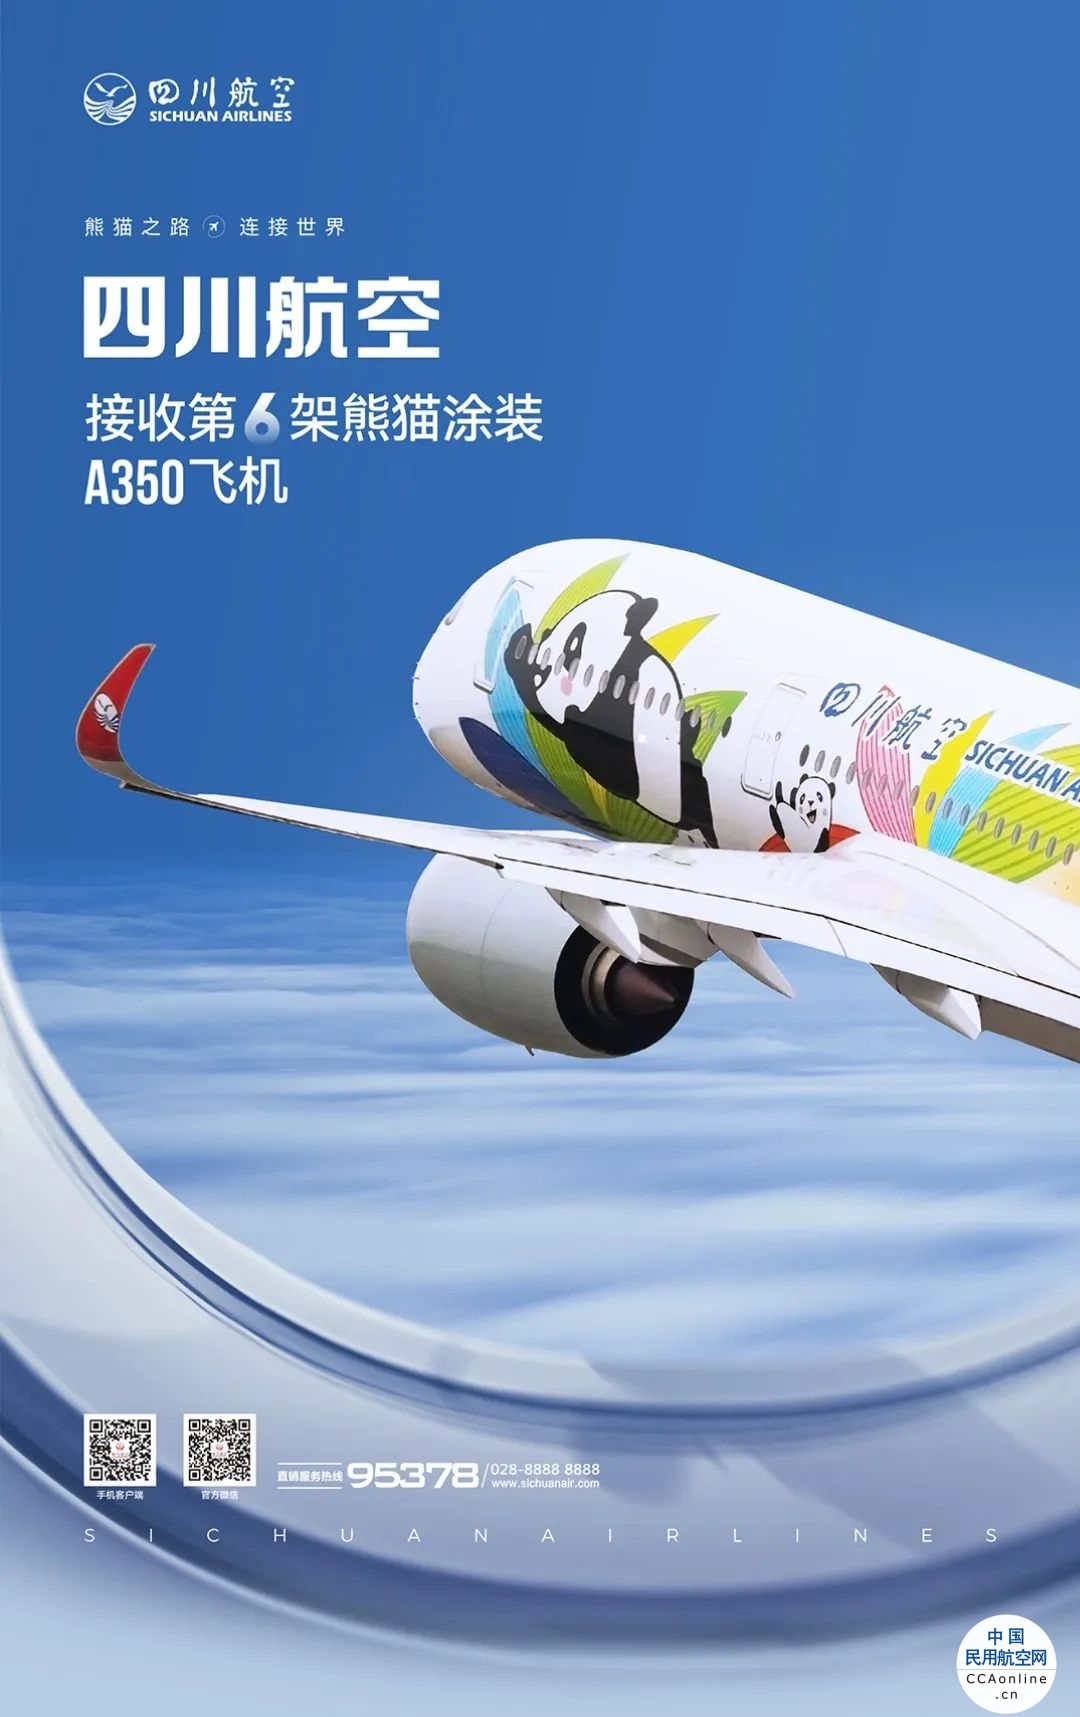 四川航空接收第六架熊猫涂装A350飞机